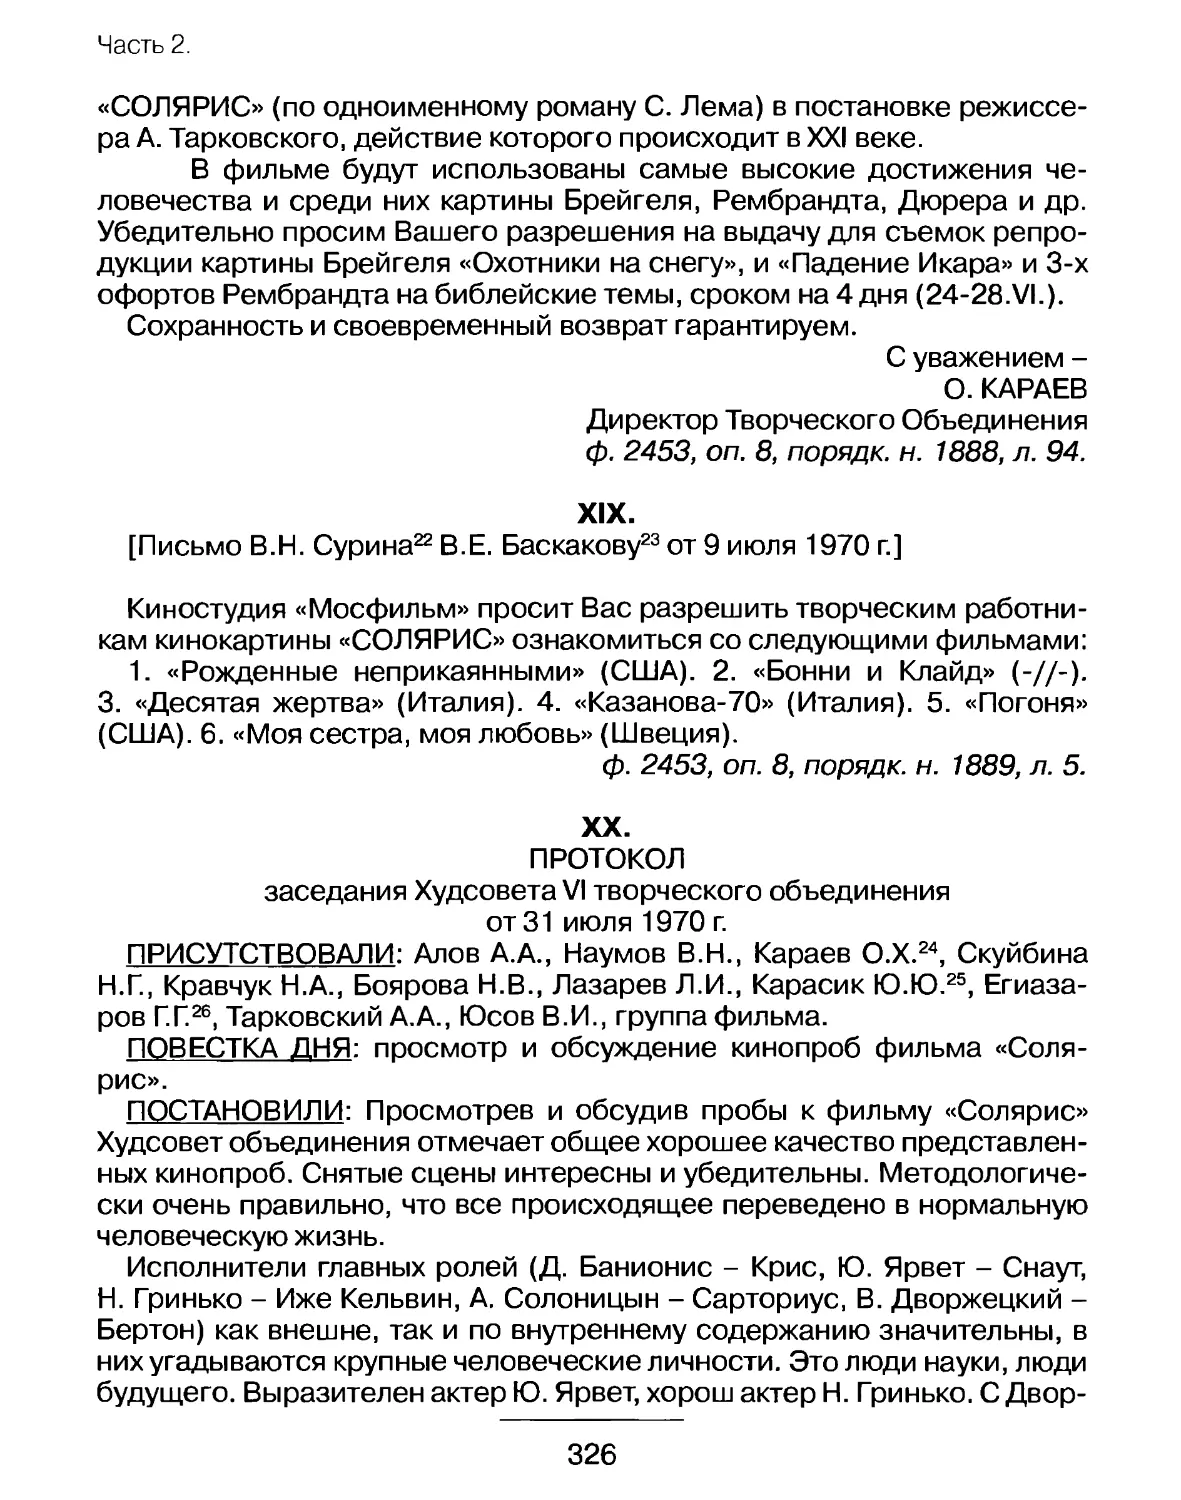 Письмо В.Н.Сурина В.Е.Баскакову от 9 июля 1970 г. о просмотре фильмов съемочной группой
Протокол заседания Худсовета VI творческого объединения от 31 июля 1970 г.